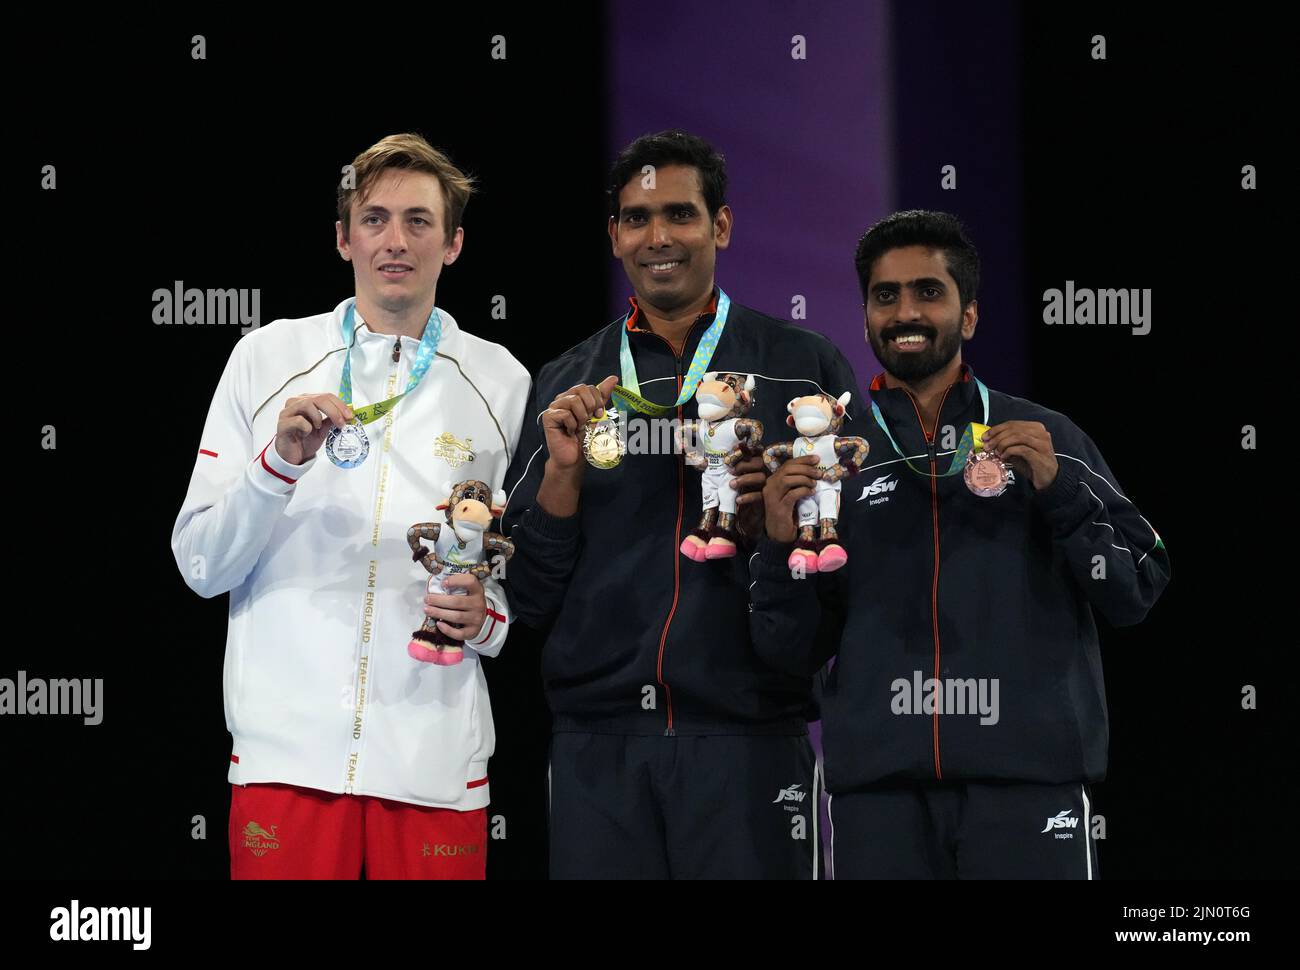 El británico Liam Pitchford, plata, el indio Sharath Kamal Achanta, oro, y el indio Sathiyan Gnanasekaran, bronce, después del tenis de mesa Men's Singles en el NEC el día once de los Juegos de la Commonwealth de 2022 en Birmingham. Fecha de la foto: Lunes 8 de agosto de 2022. Foto de stock